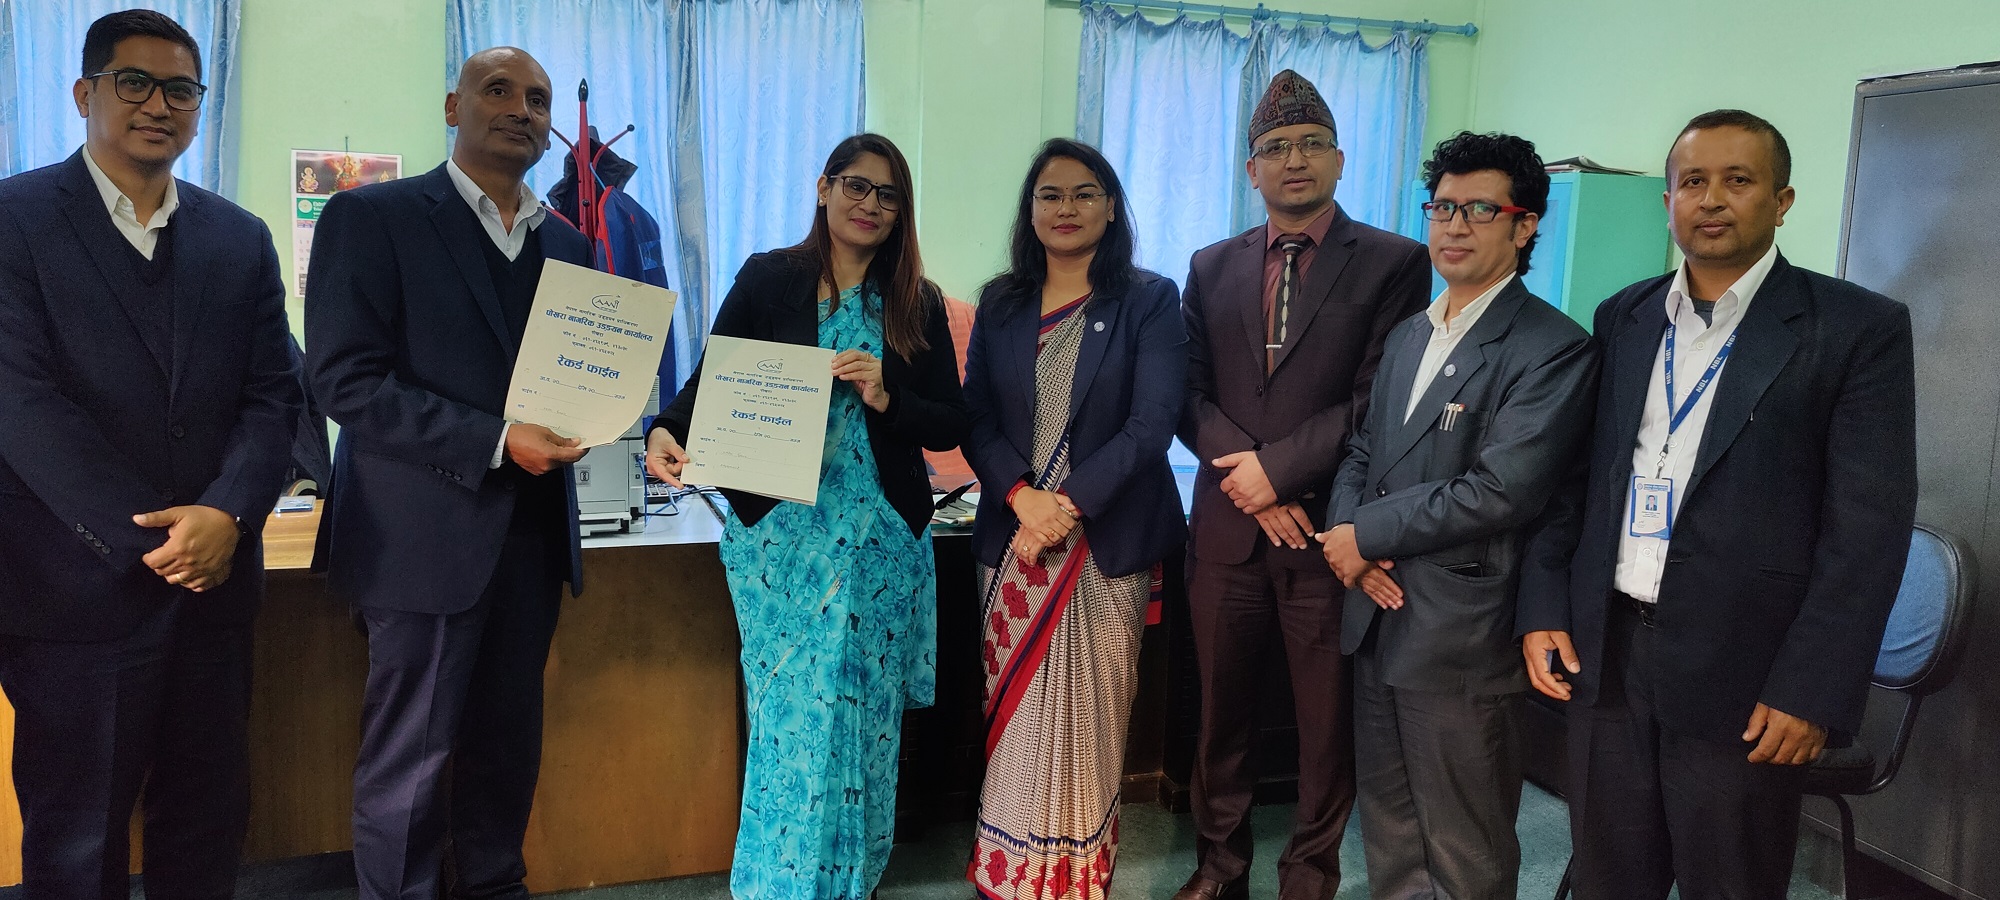 नेपाल बैंक र नागरिक उड्डयन प्राधिकरणबीच सम्झौता